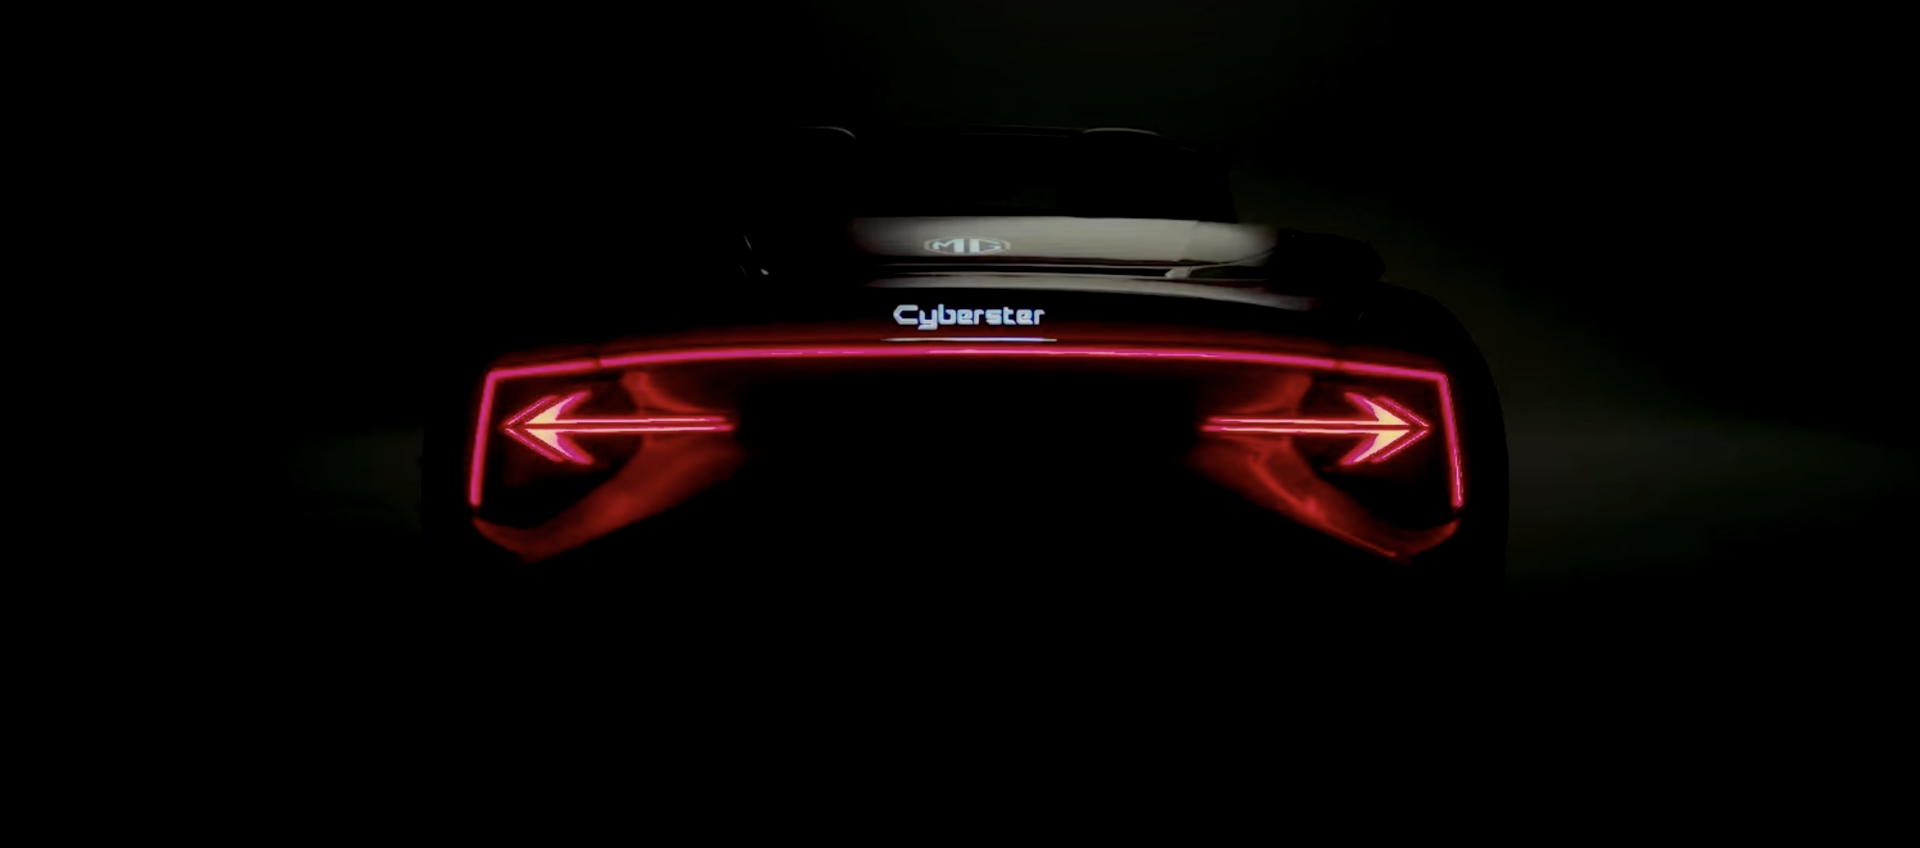 Cyberster Rear Image